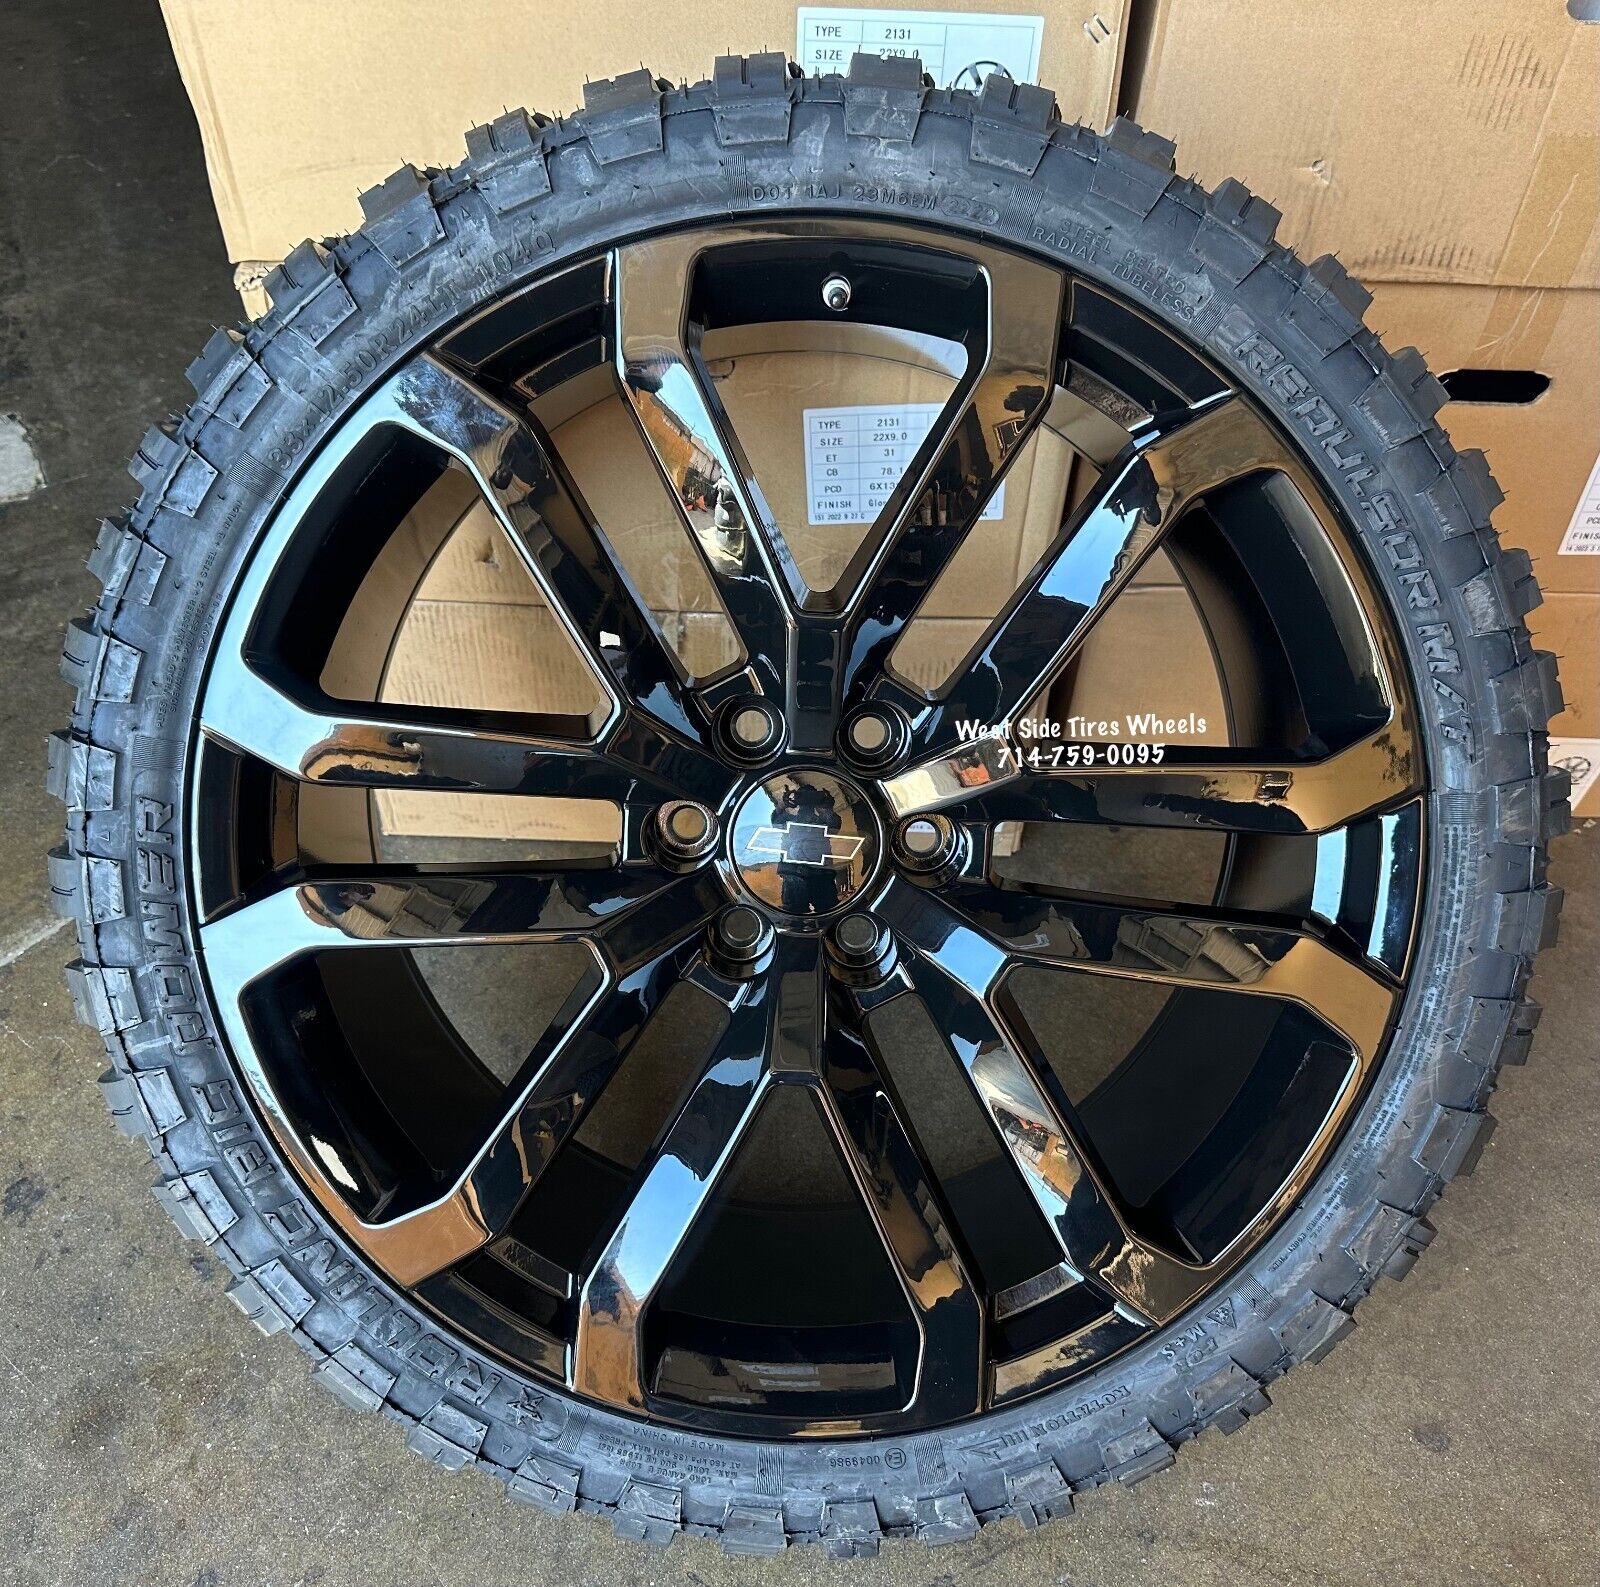 24” BLACK WHEELS Chevy Silverado Tahoe GMC Yukon Sierra Ram 33” MT Mud Tires TPS